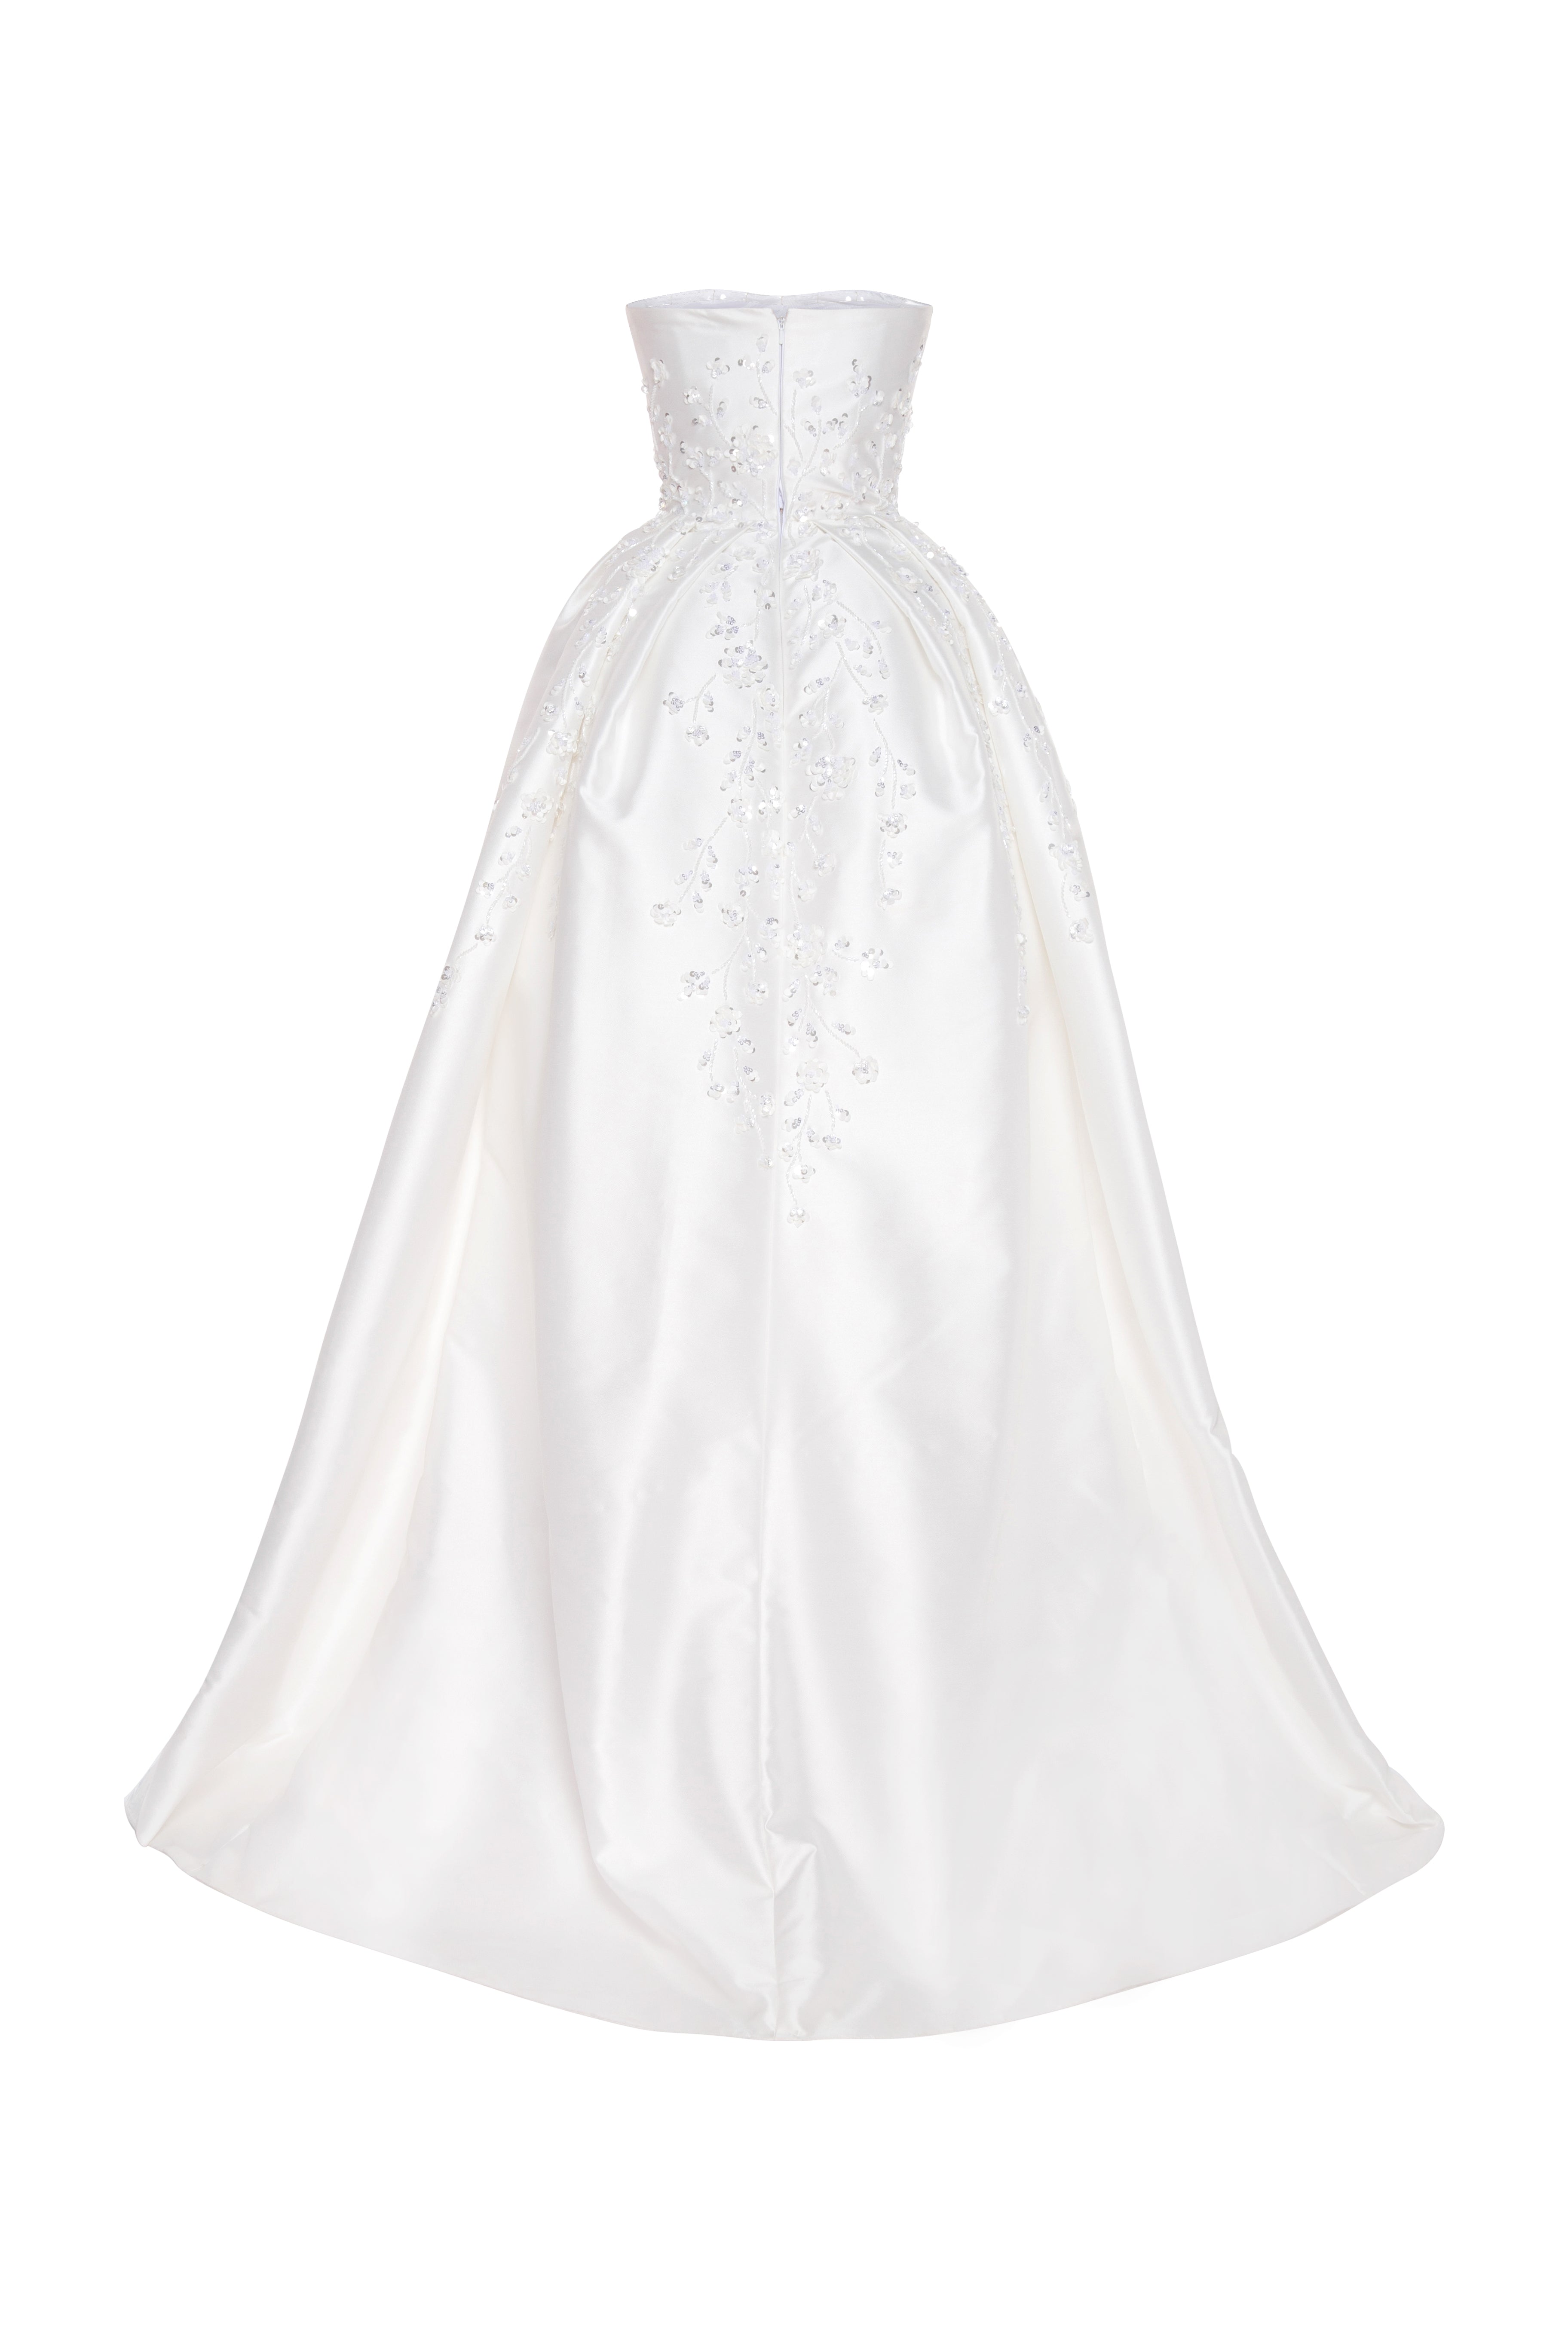 Strapless beaded satin wedding dress with slit skirt